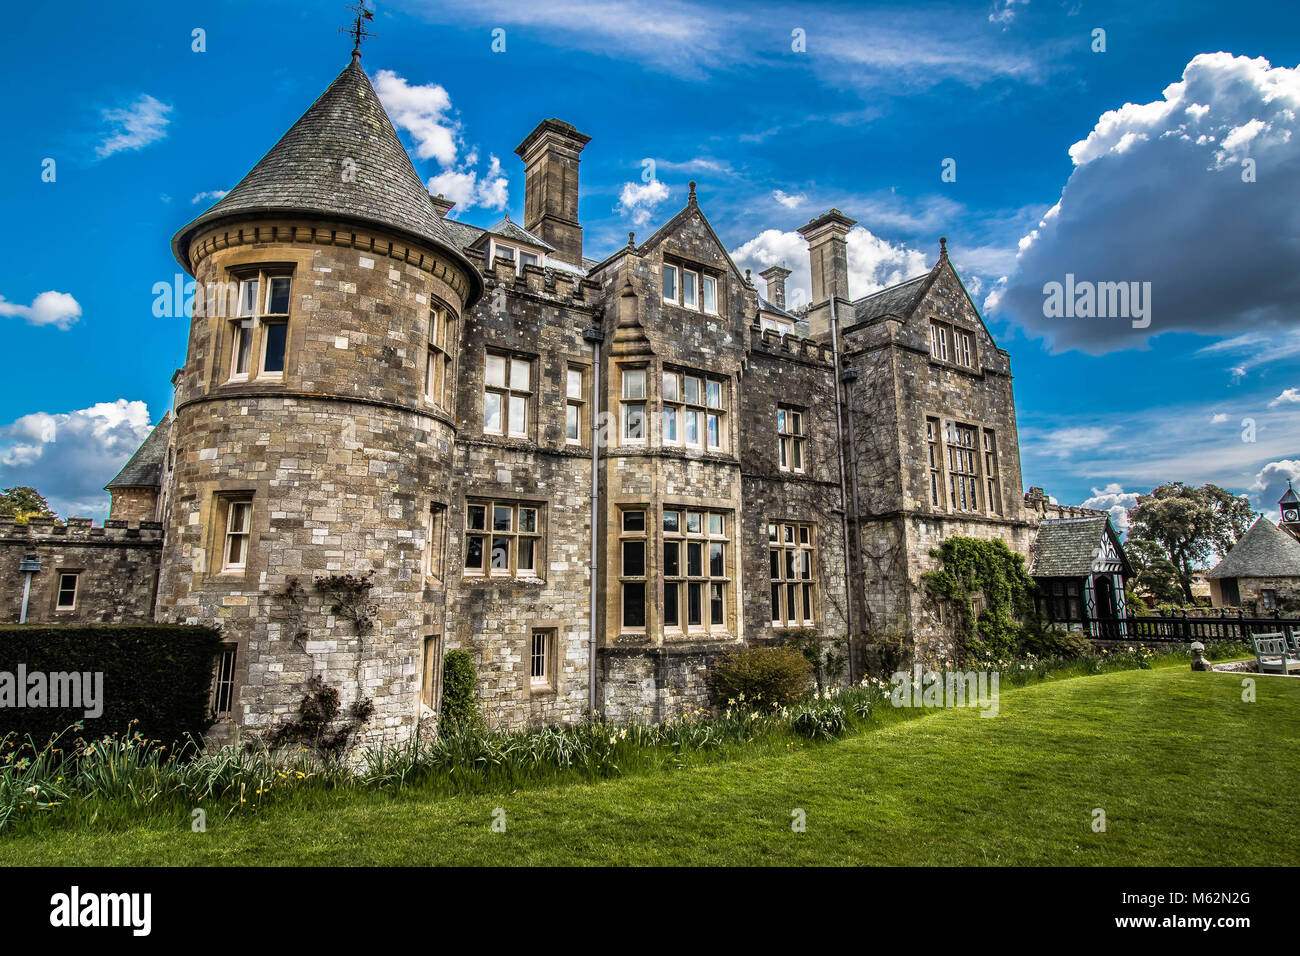 Palace House in Beaulieu, Hampshire UK Stockfoto